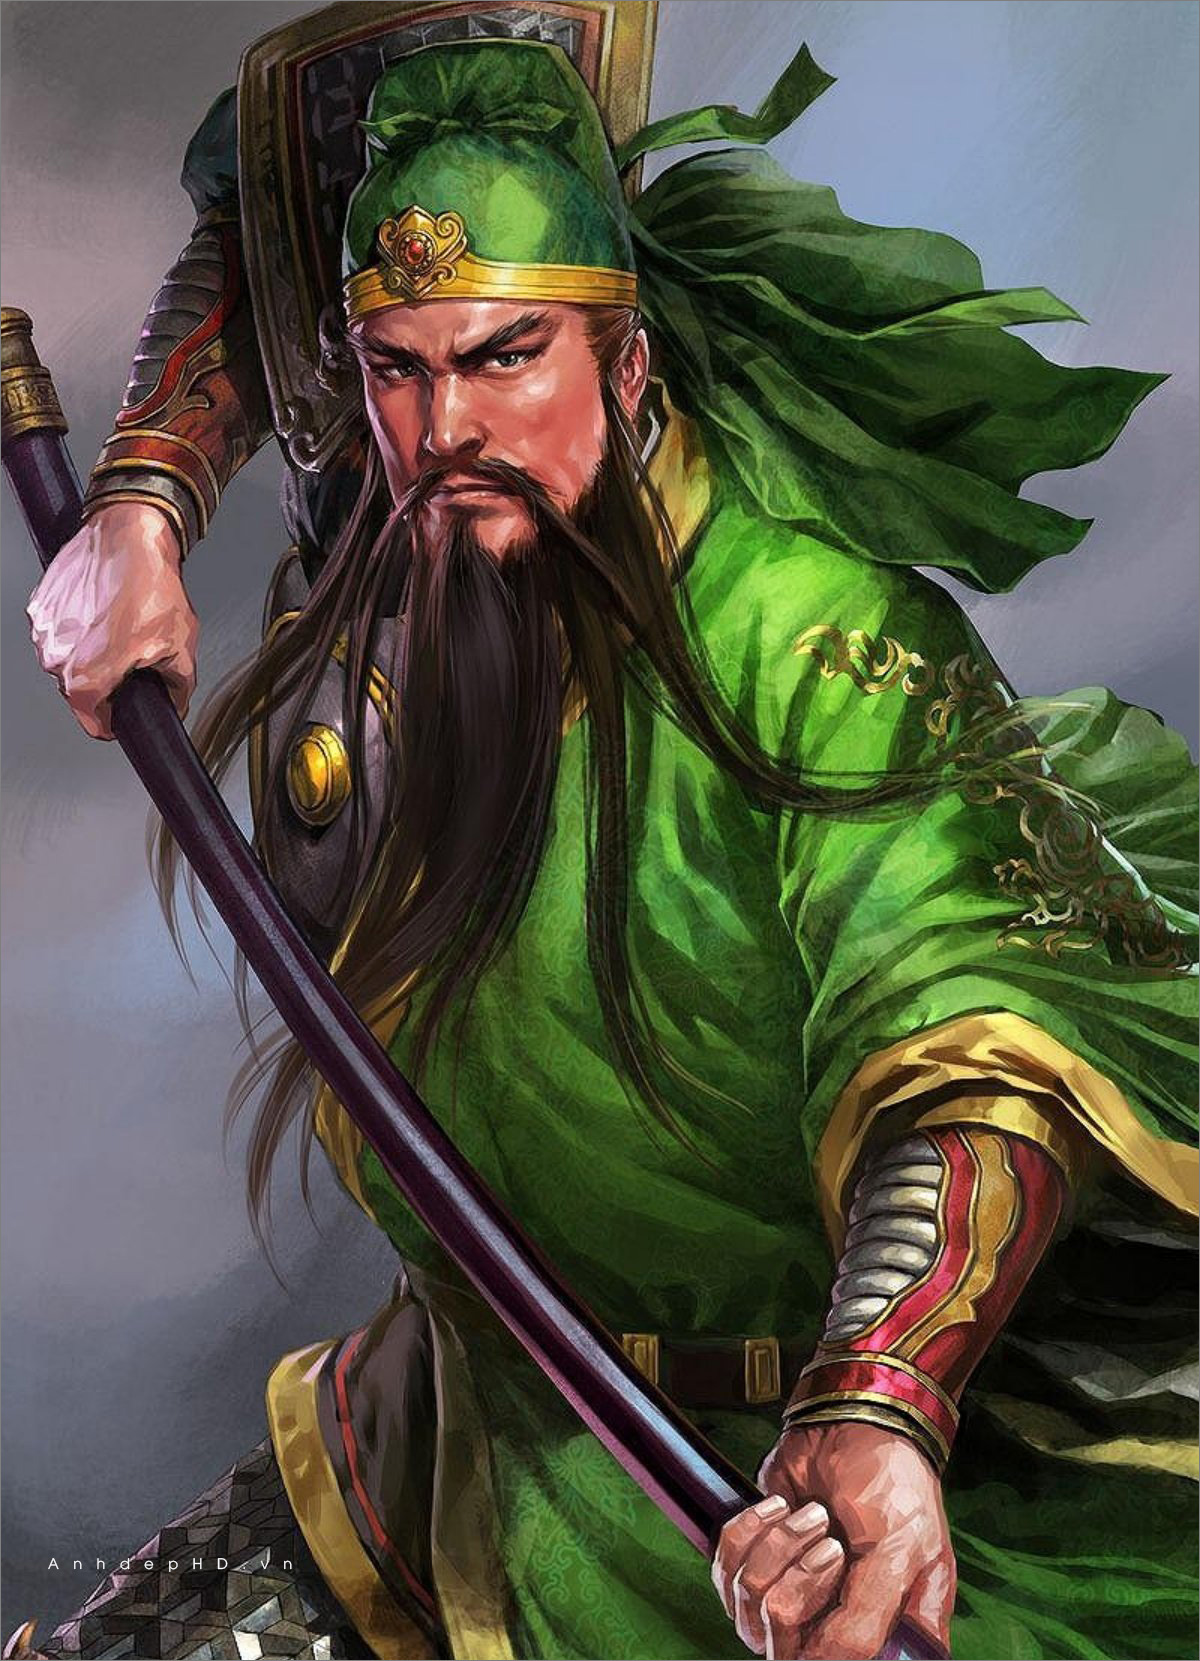 Quan Vũ: Quan Vũ, tướng quân huyền thoại trong lịch sử Trung Hoa, với trang phục hào nhoáng và kiếm thuật uyển chuyển. Image liên quan đến Quan Vũ sẽ mang đến cho bạn những trải nghiệm bất ngờ và thú vị.